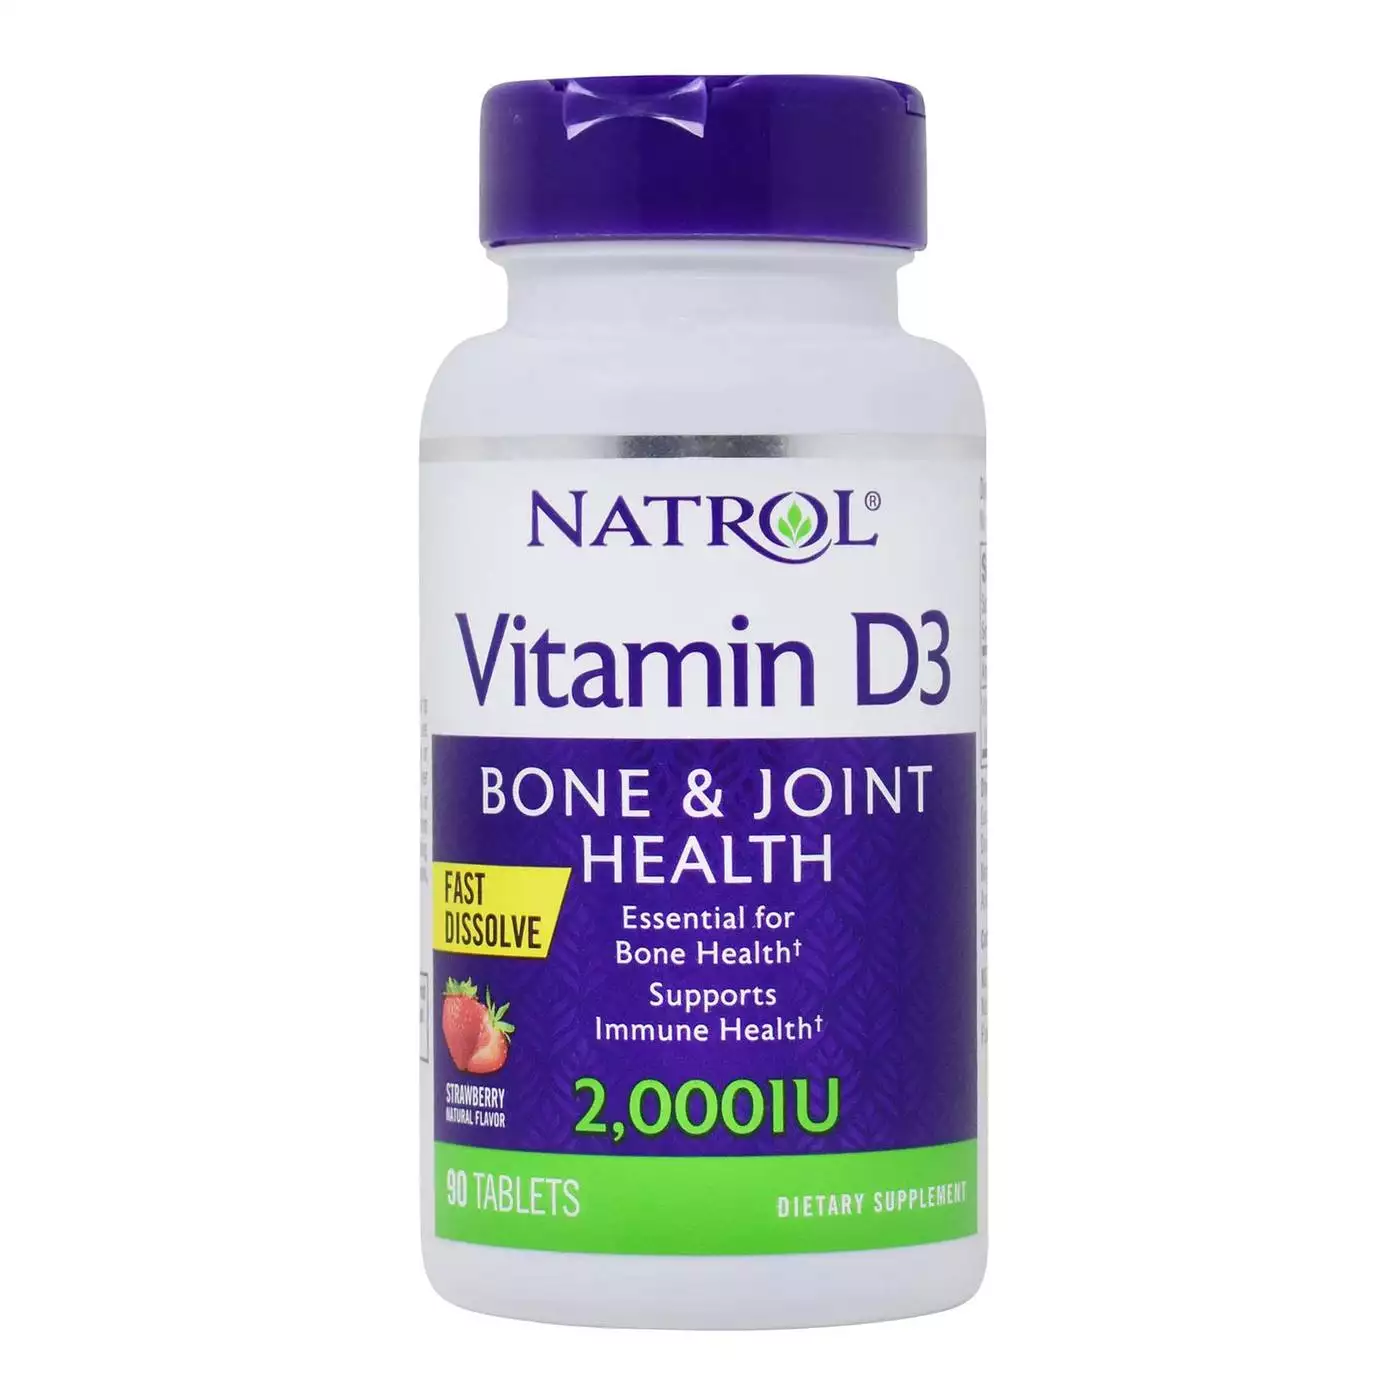 Natrol vitamin D3 fast dissolve